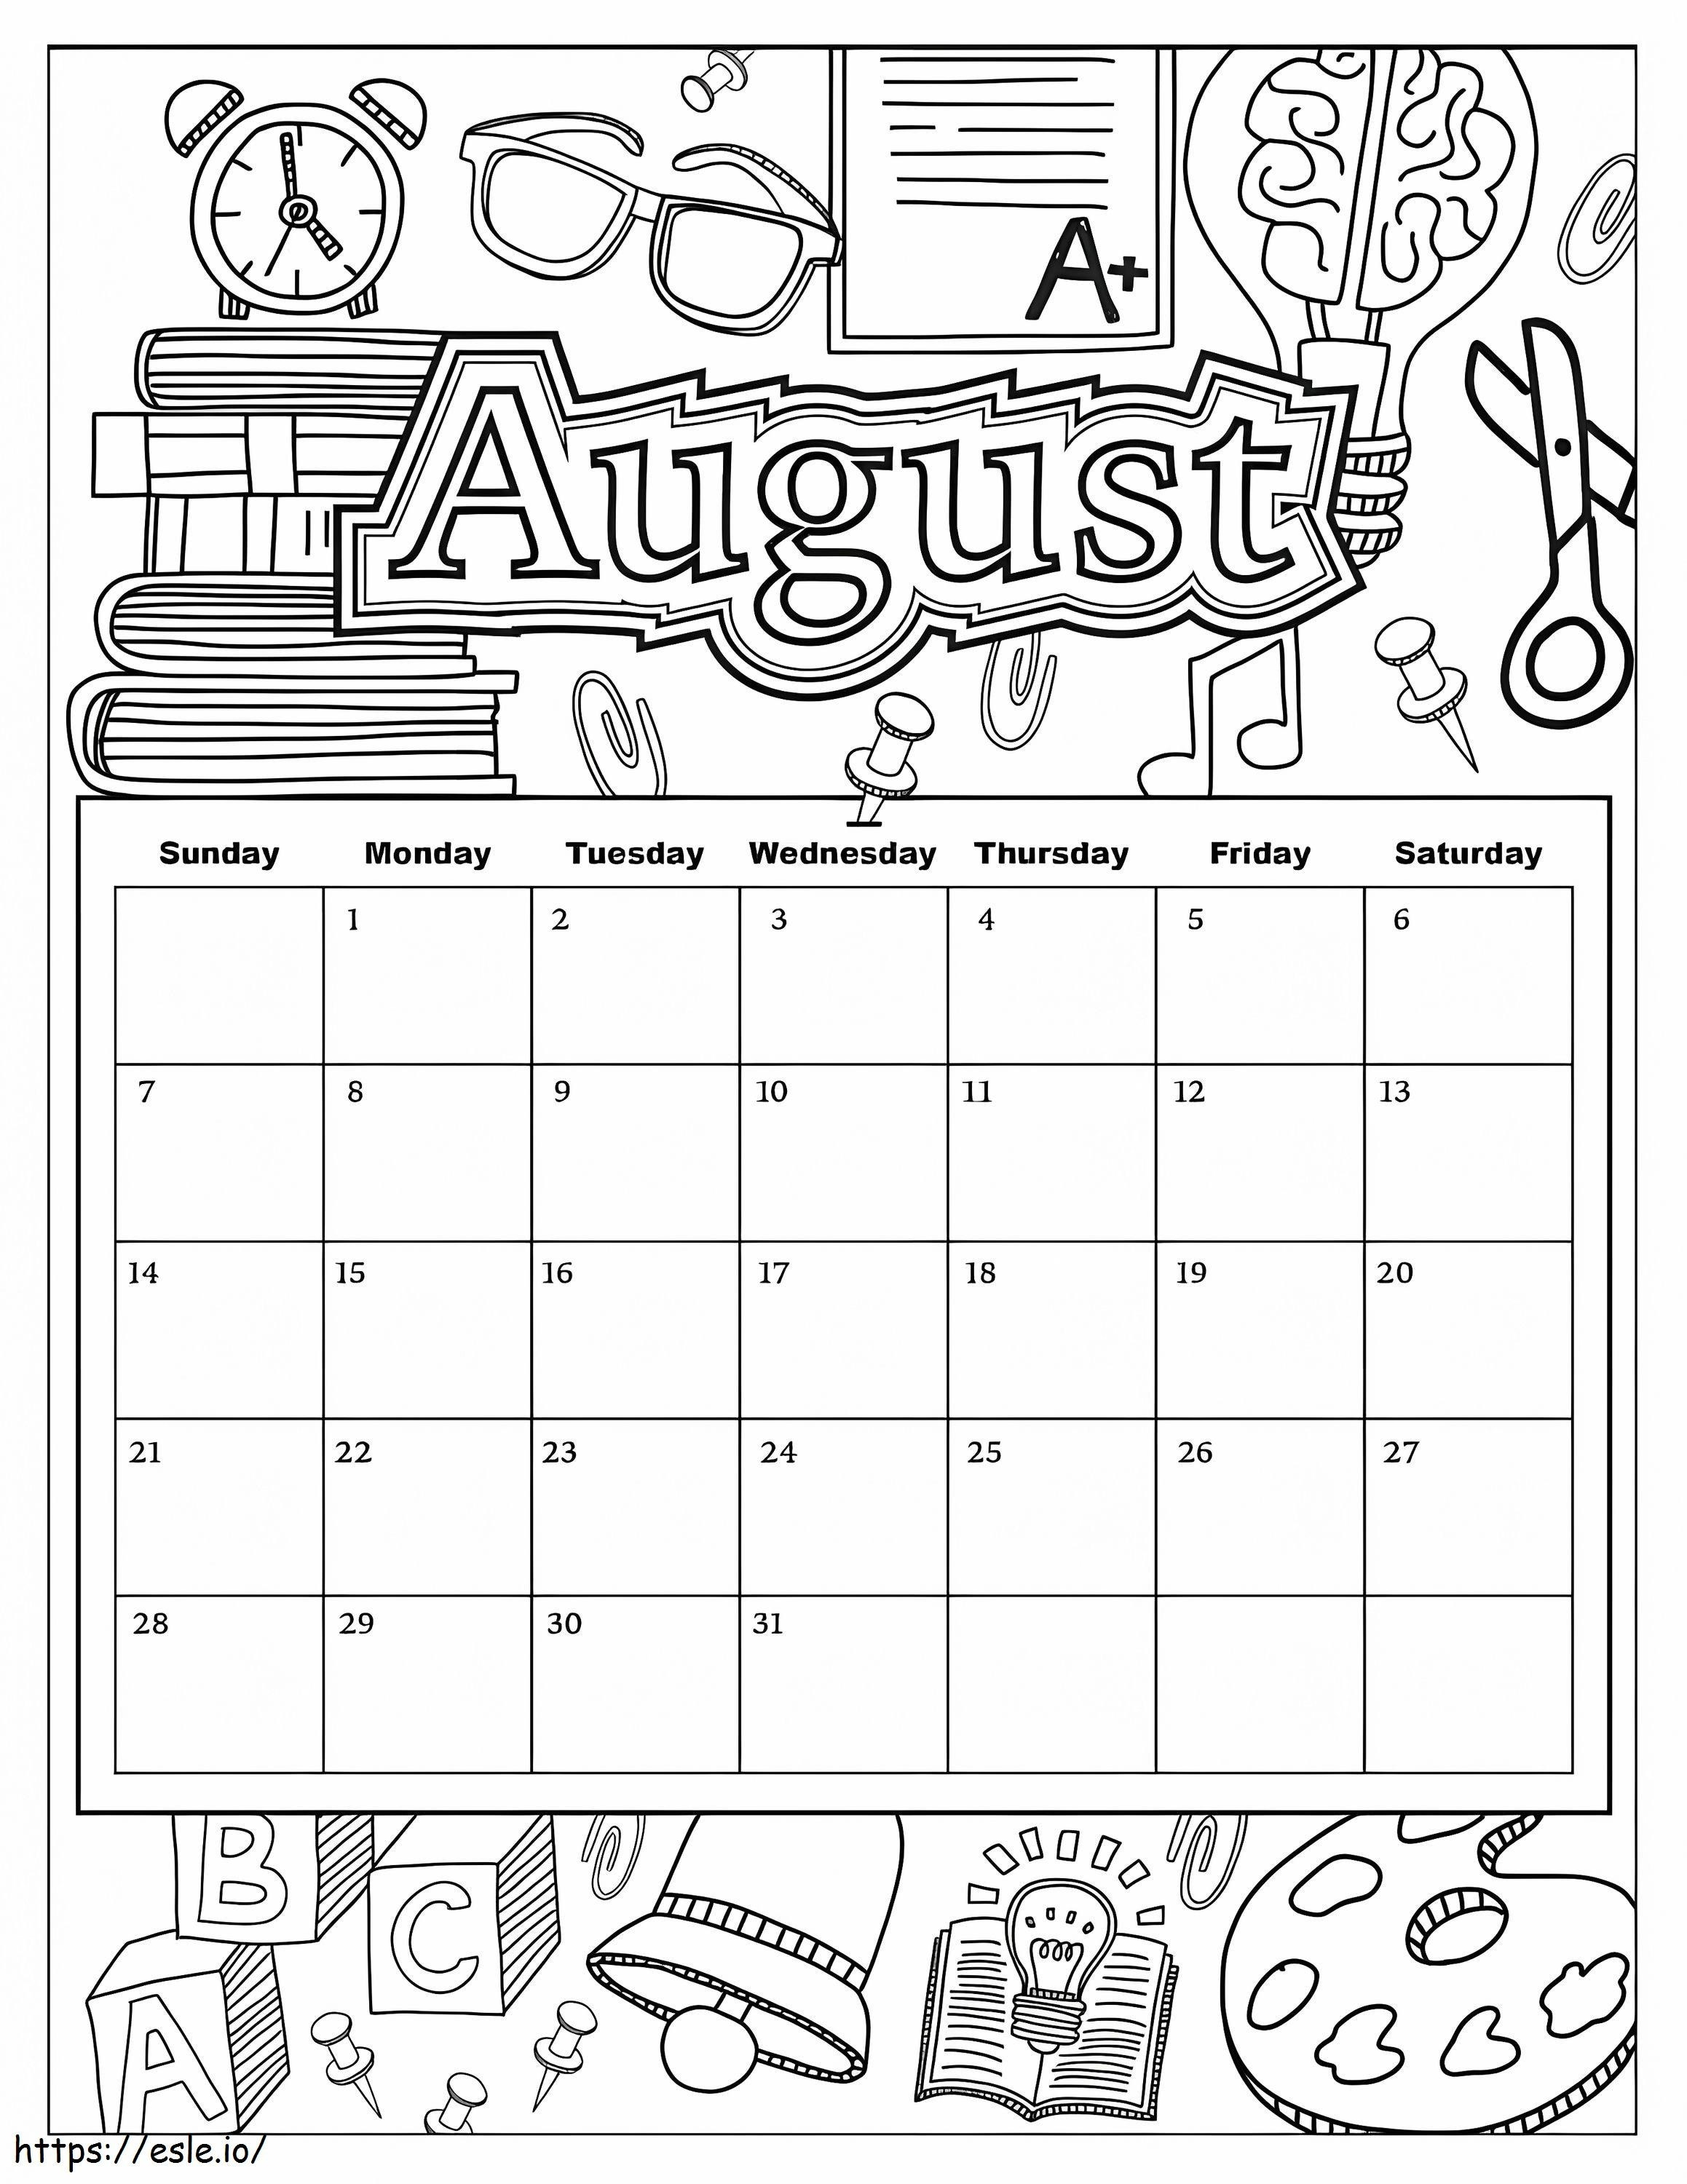 Calendario agosto da colorare